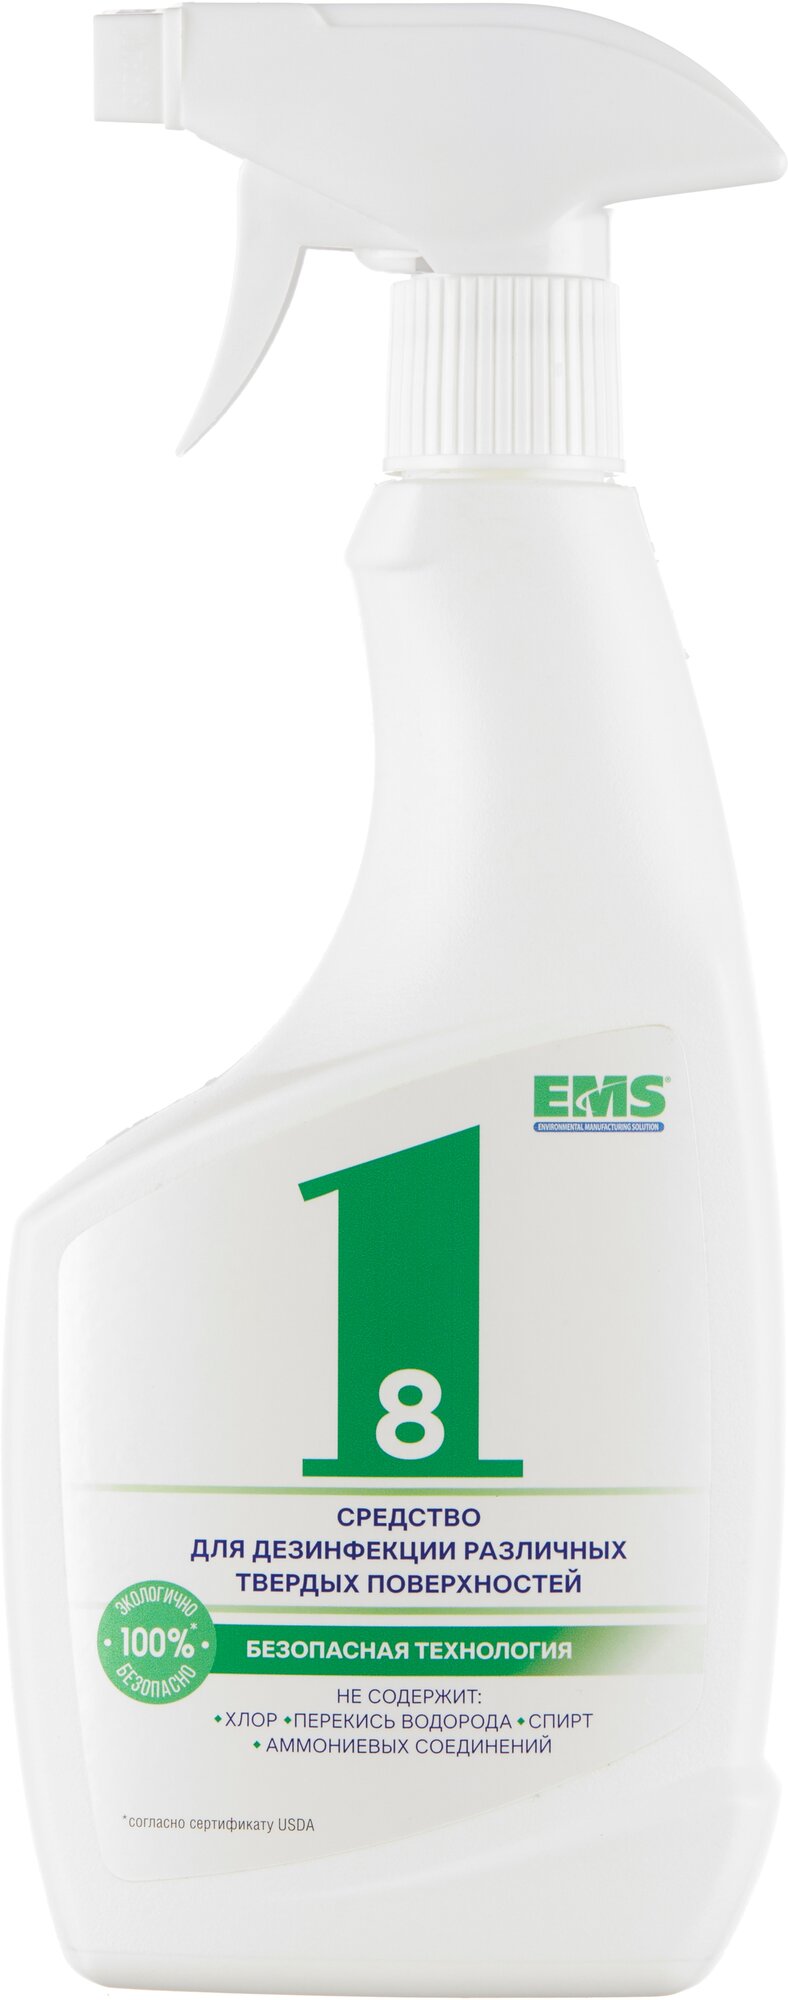 ЕМС-Рус 1-8 Средство для дезинфекции различных поверхностей спрей